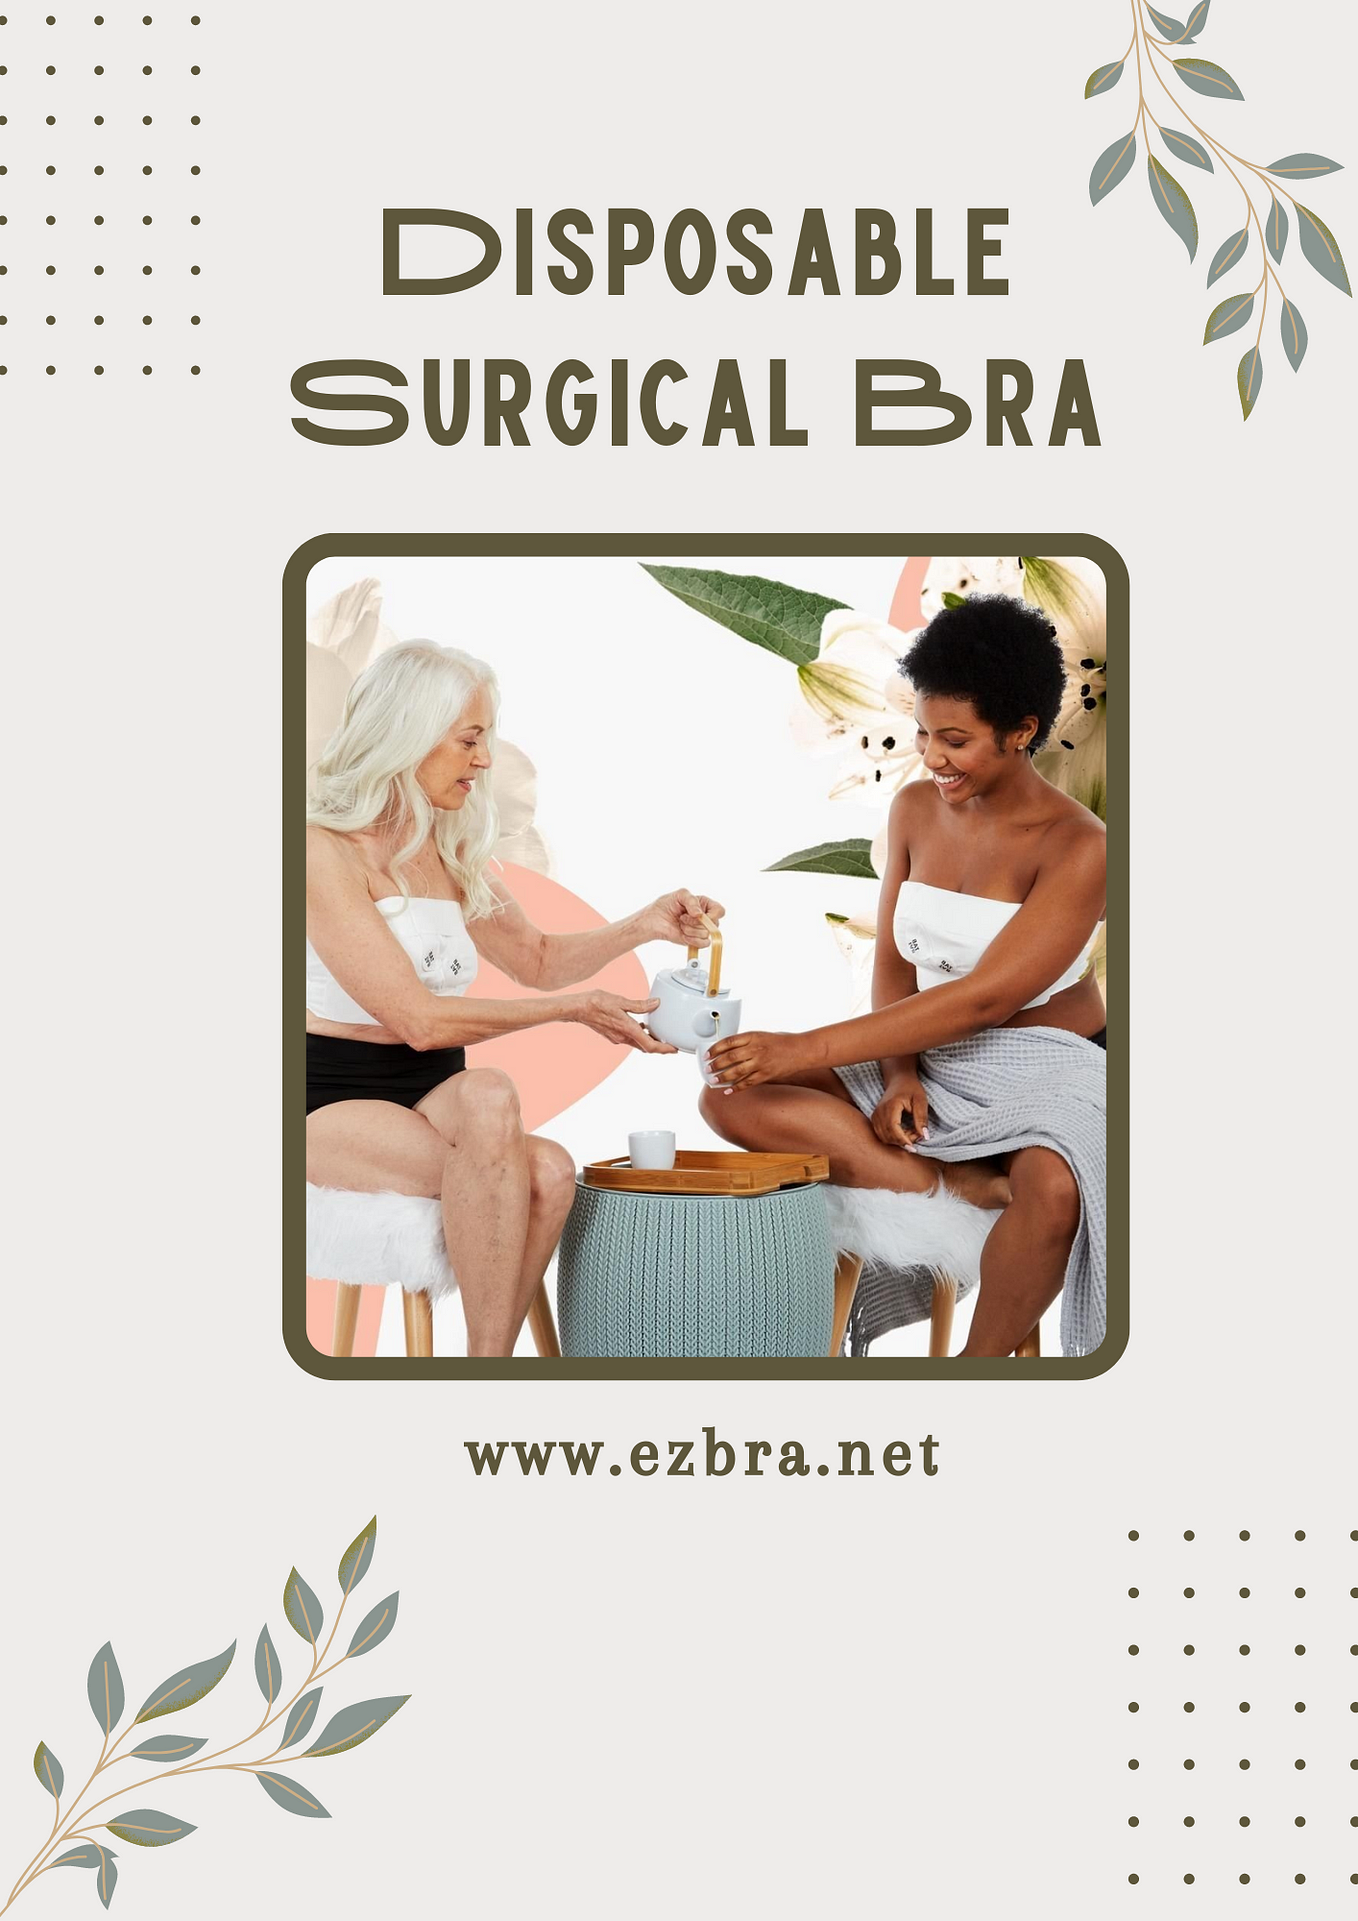 Post-Surgical Bra Features — EZbra Breast Dressing - EZ bra - Medium